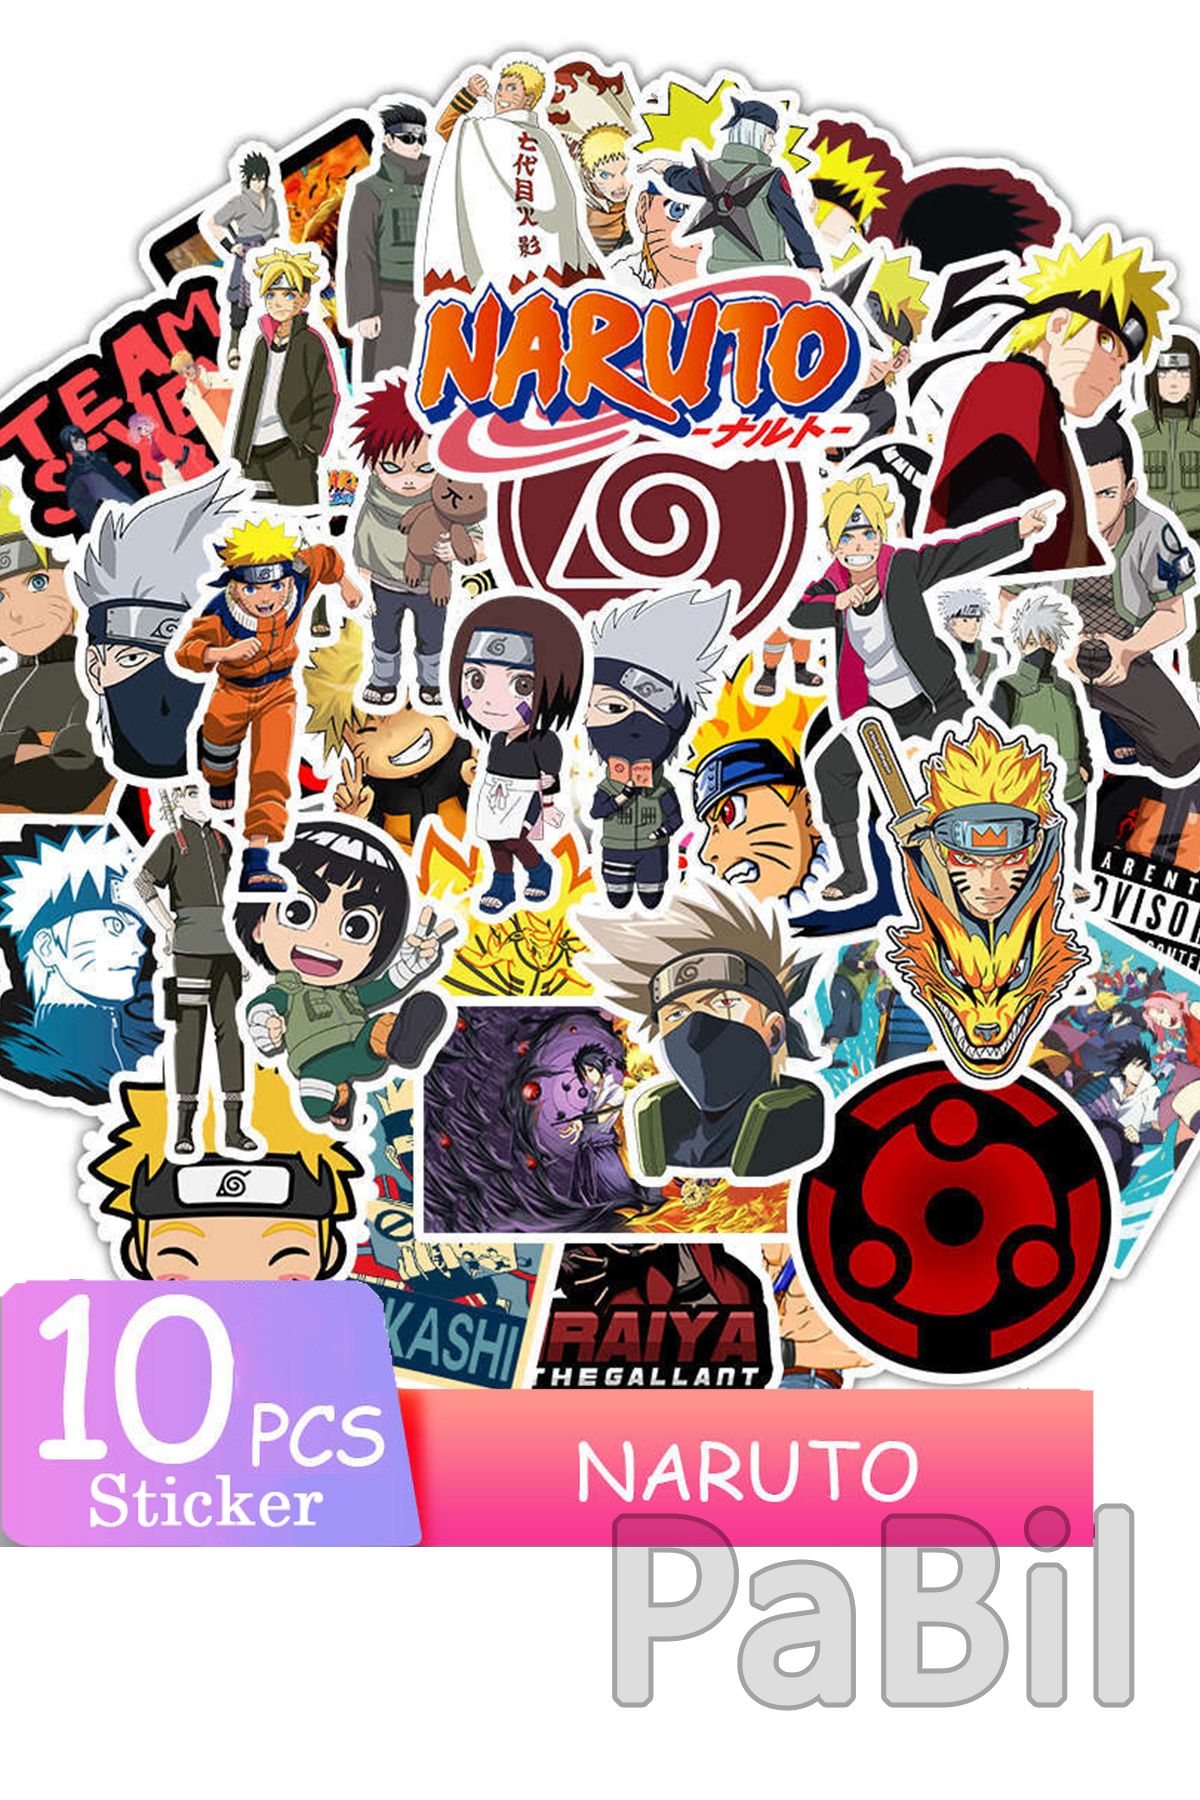 𝙿𝚒𝚔𝚊♡🦋 adlı kullanıcının Naruto Shippuden♋ panosundaki Pin, 2023